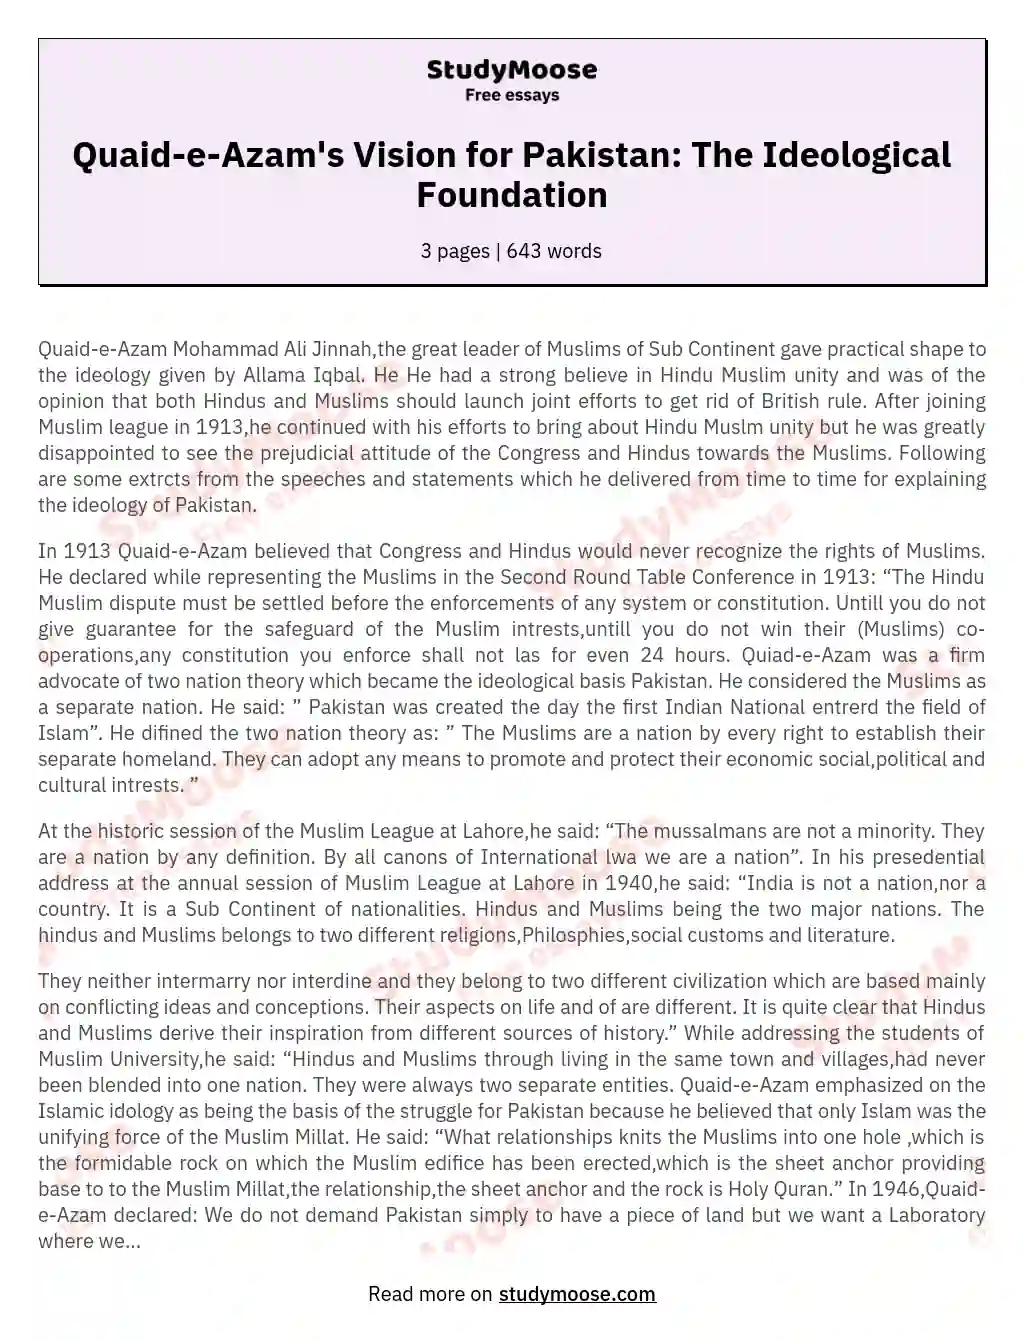 Quaid-e-Azam's Vision for Pakistan: The Ideological Foundation essay